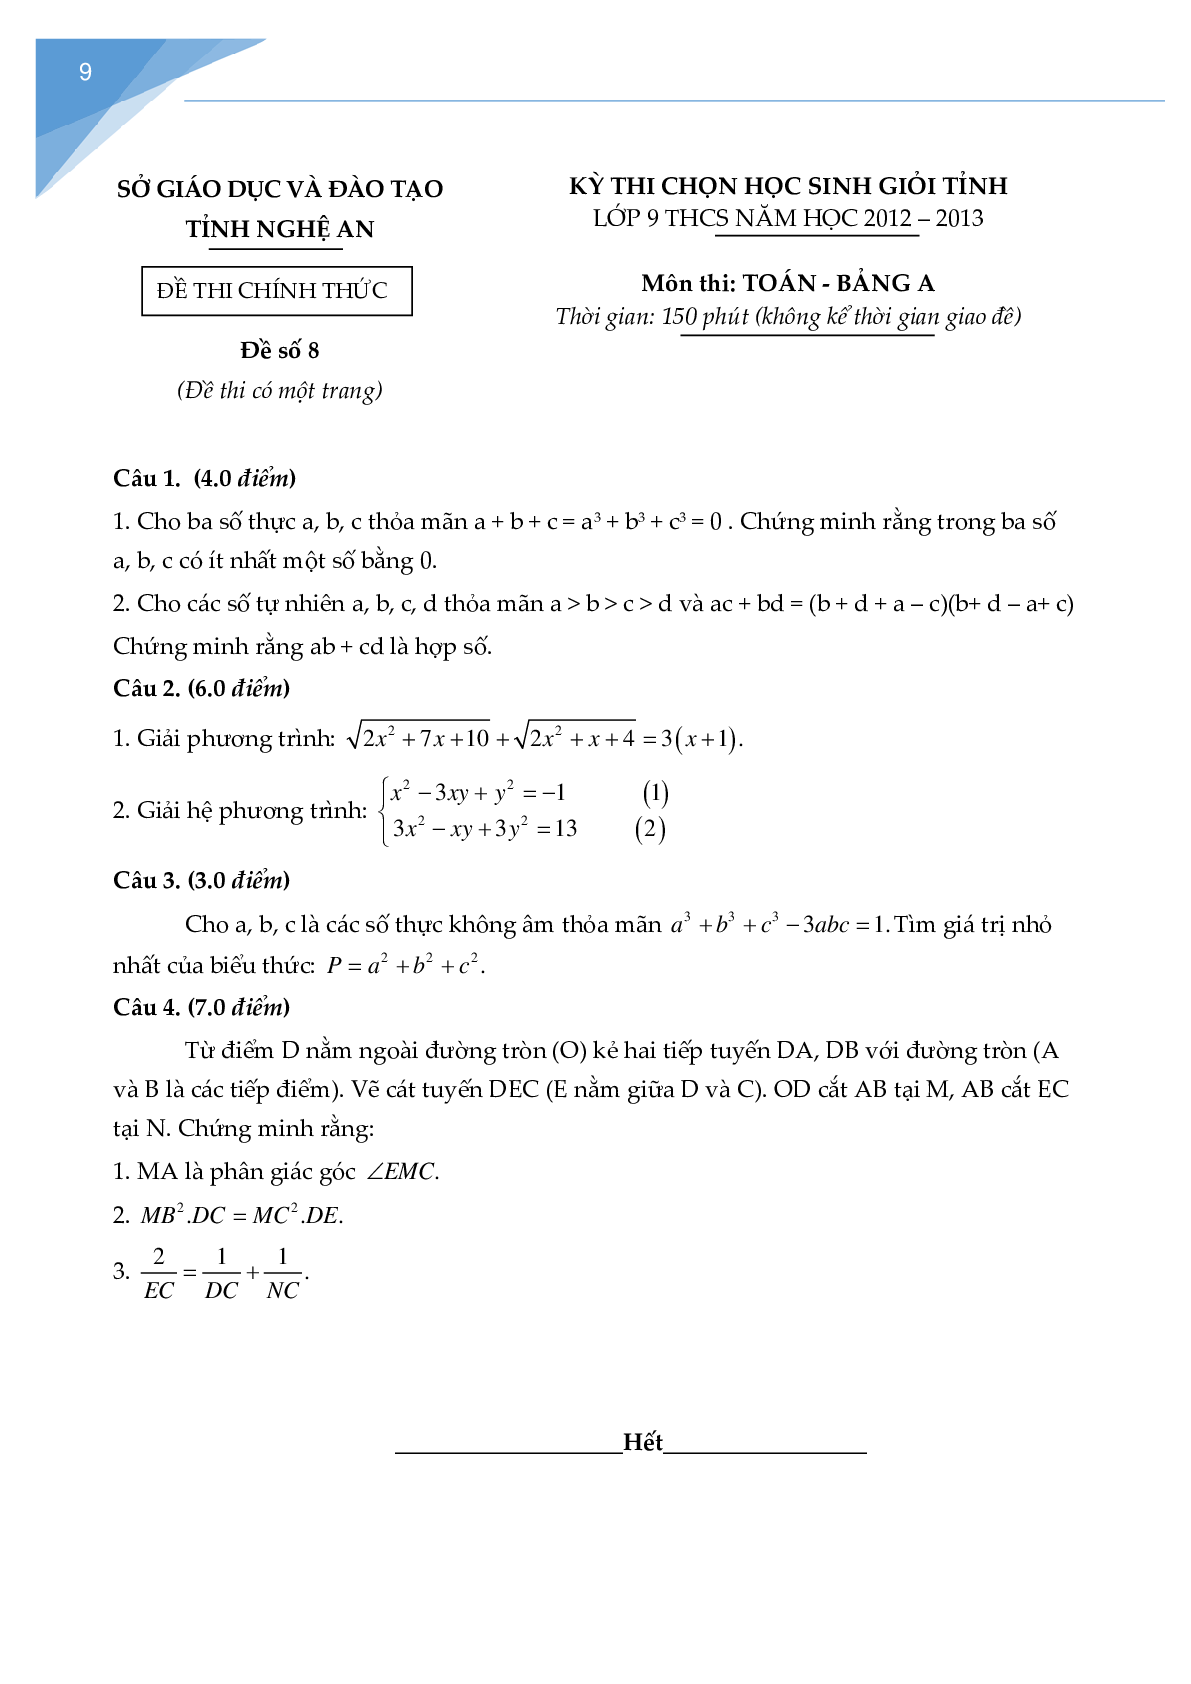 Bộ đề thi học sinh giỏi toán lớp 9 tỉnh Nghệ An (trang 8)